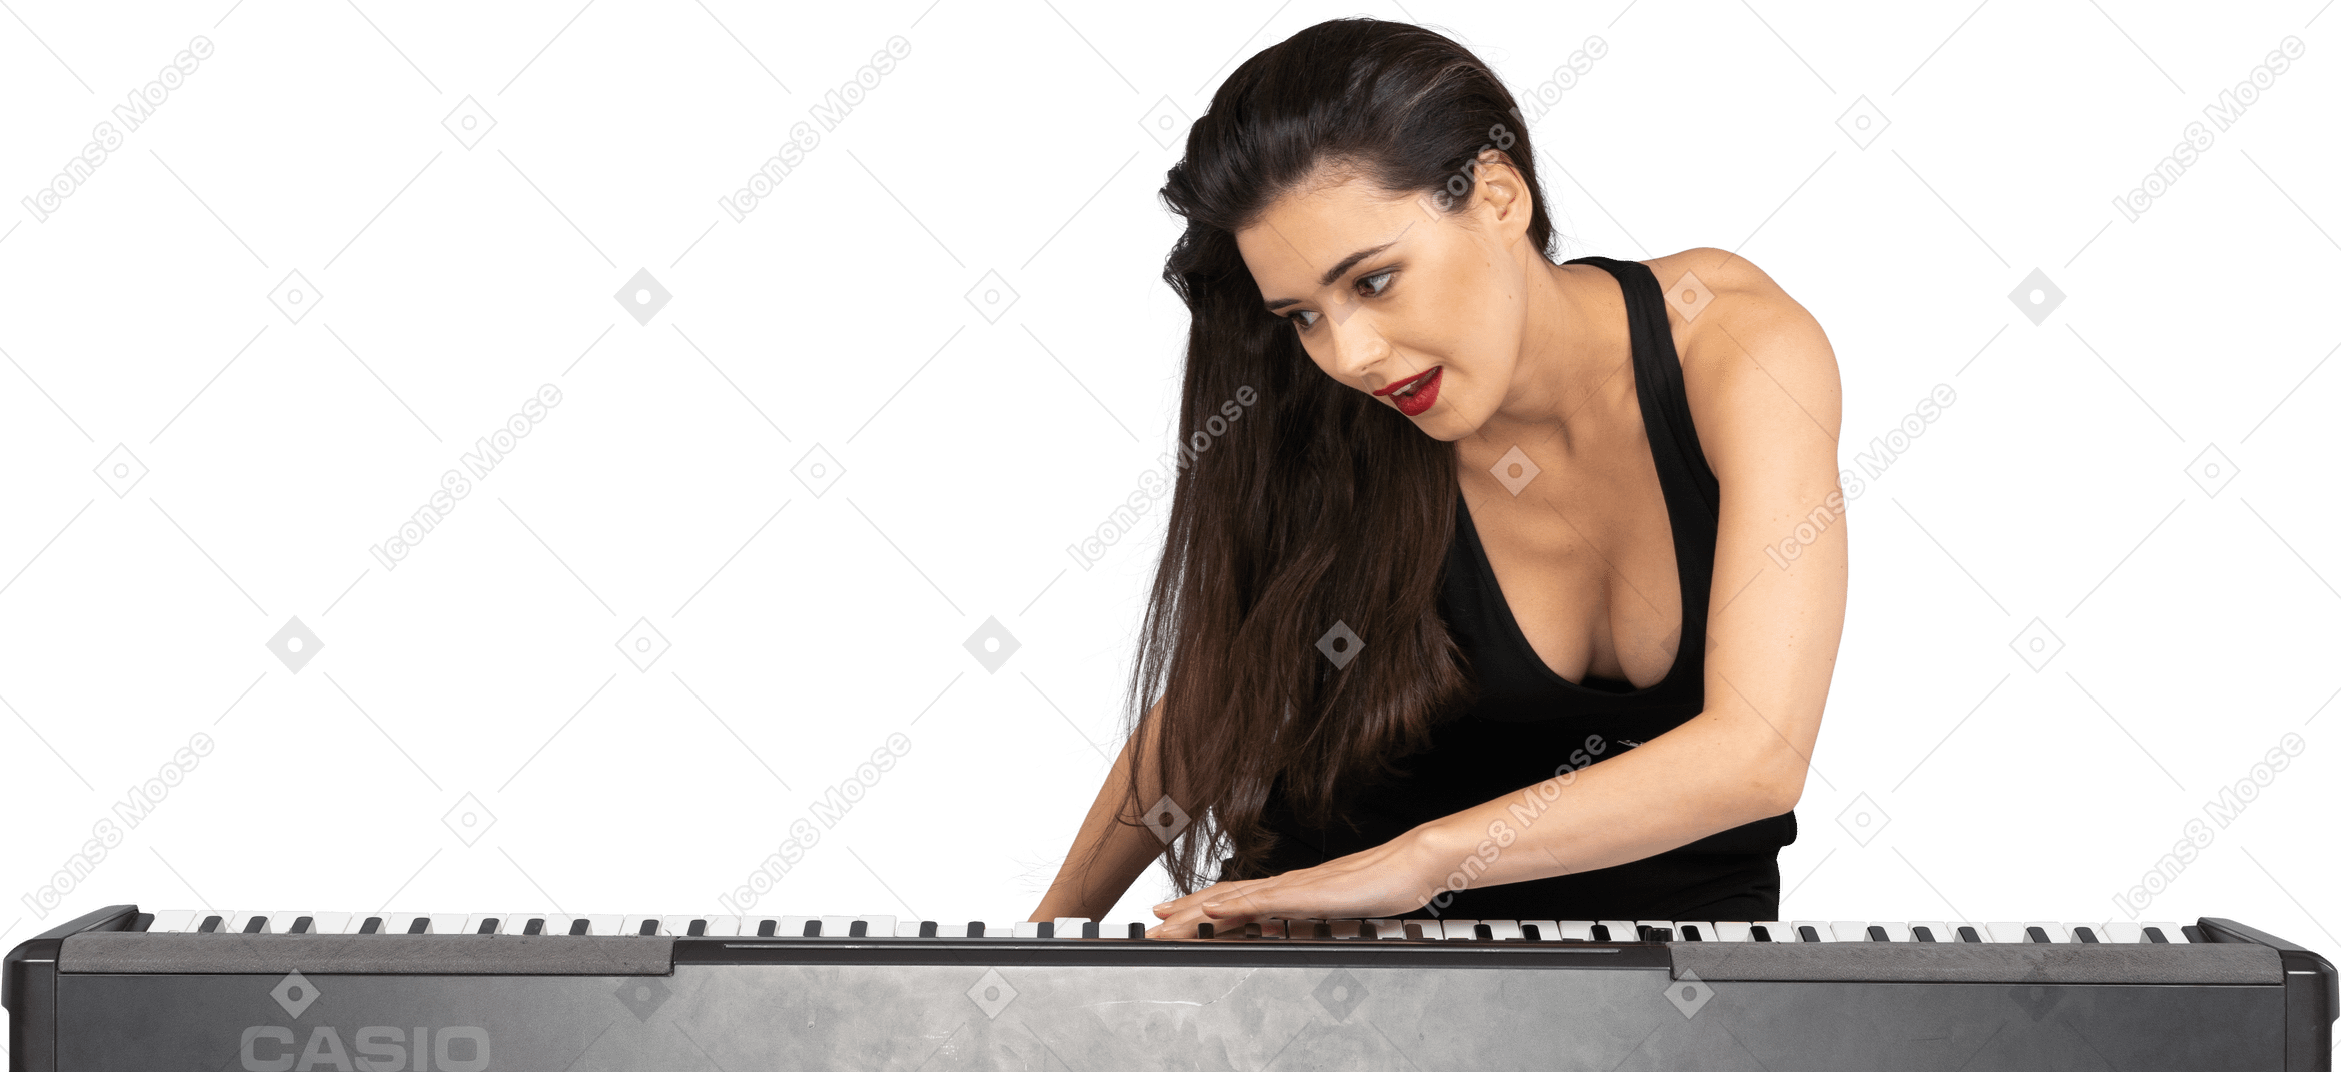 Vorderansicht einer jungen dame im schwarzen kleid, die ihre hand auf tastatur legt und zur seite lehnt